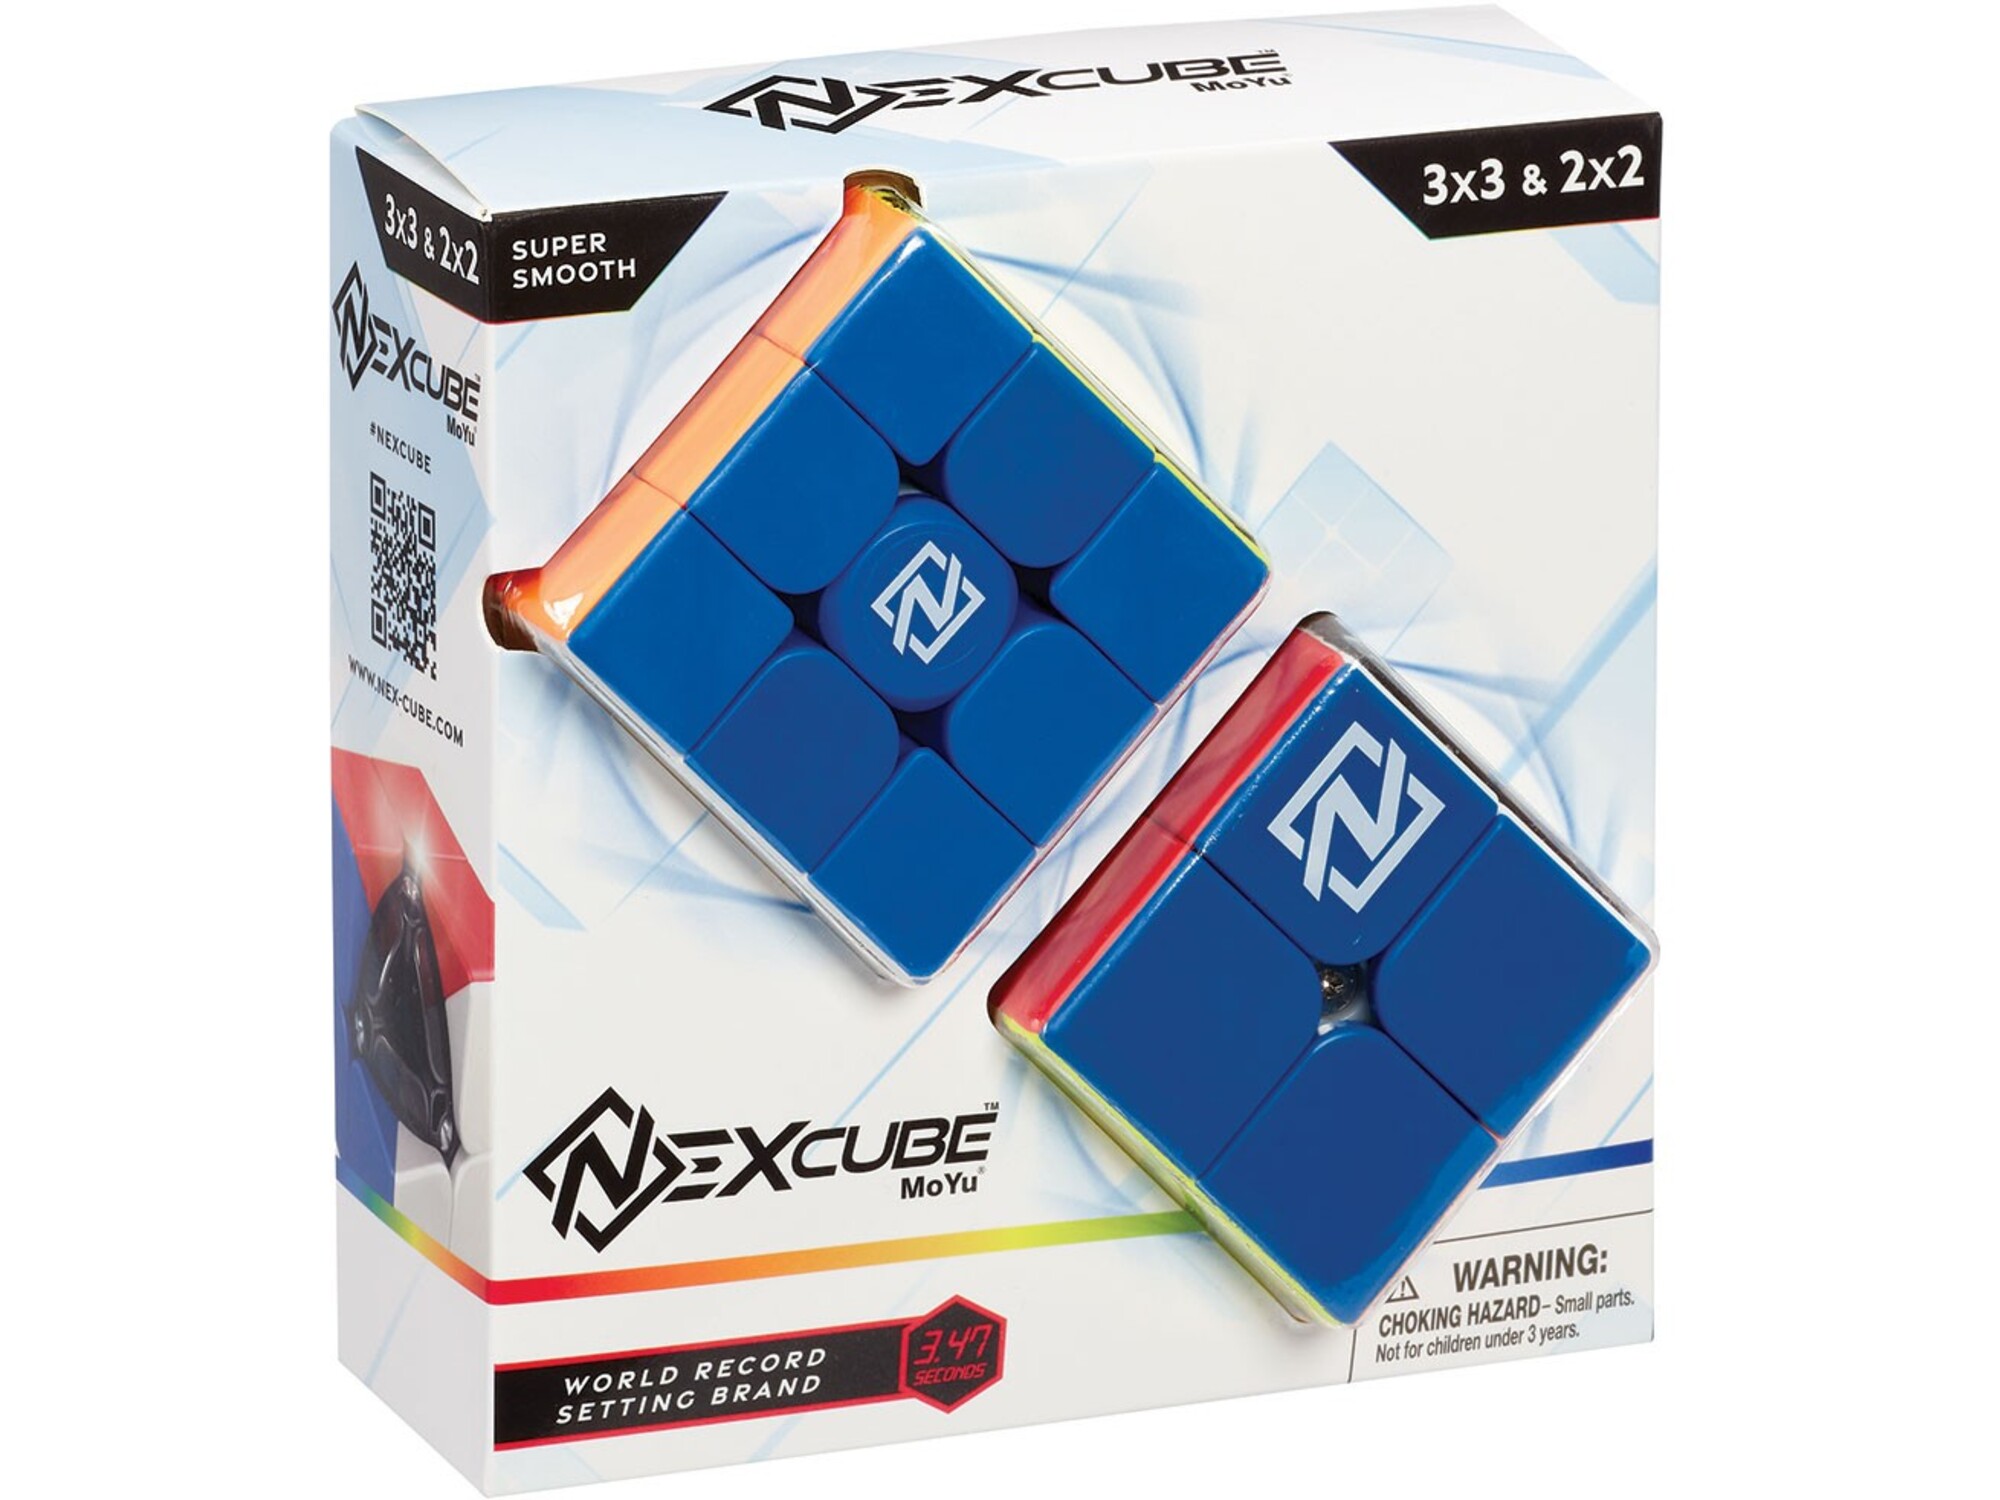 NEXCUBE miselna igra kocka 2x2 in 3x3